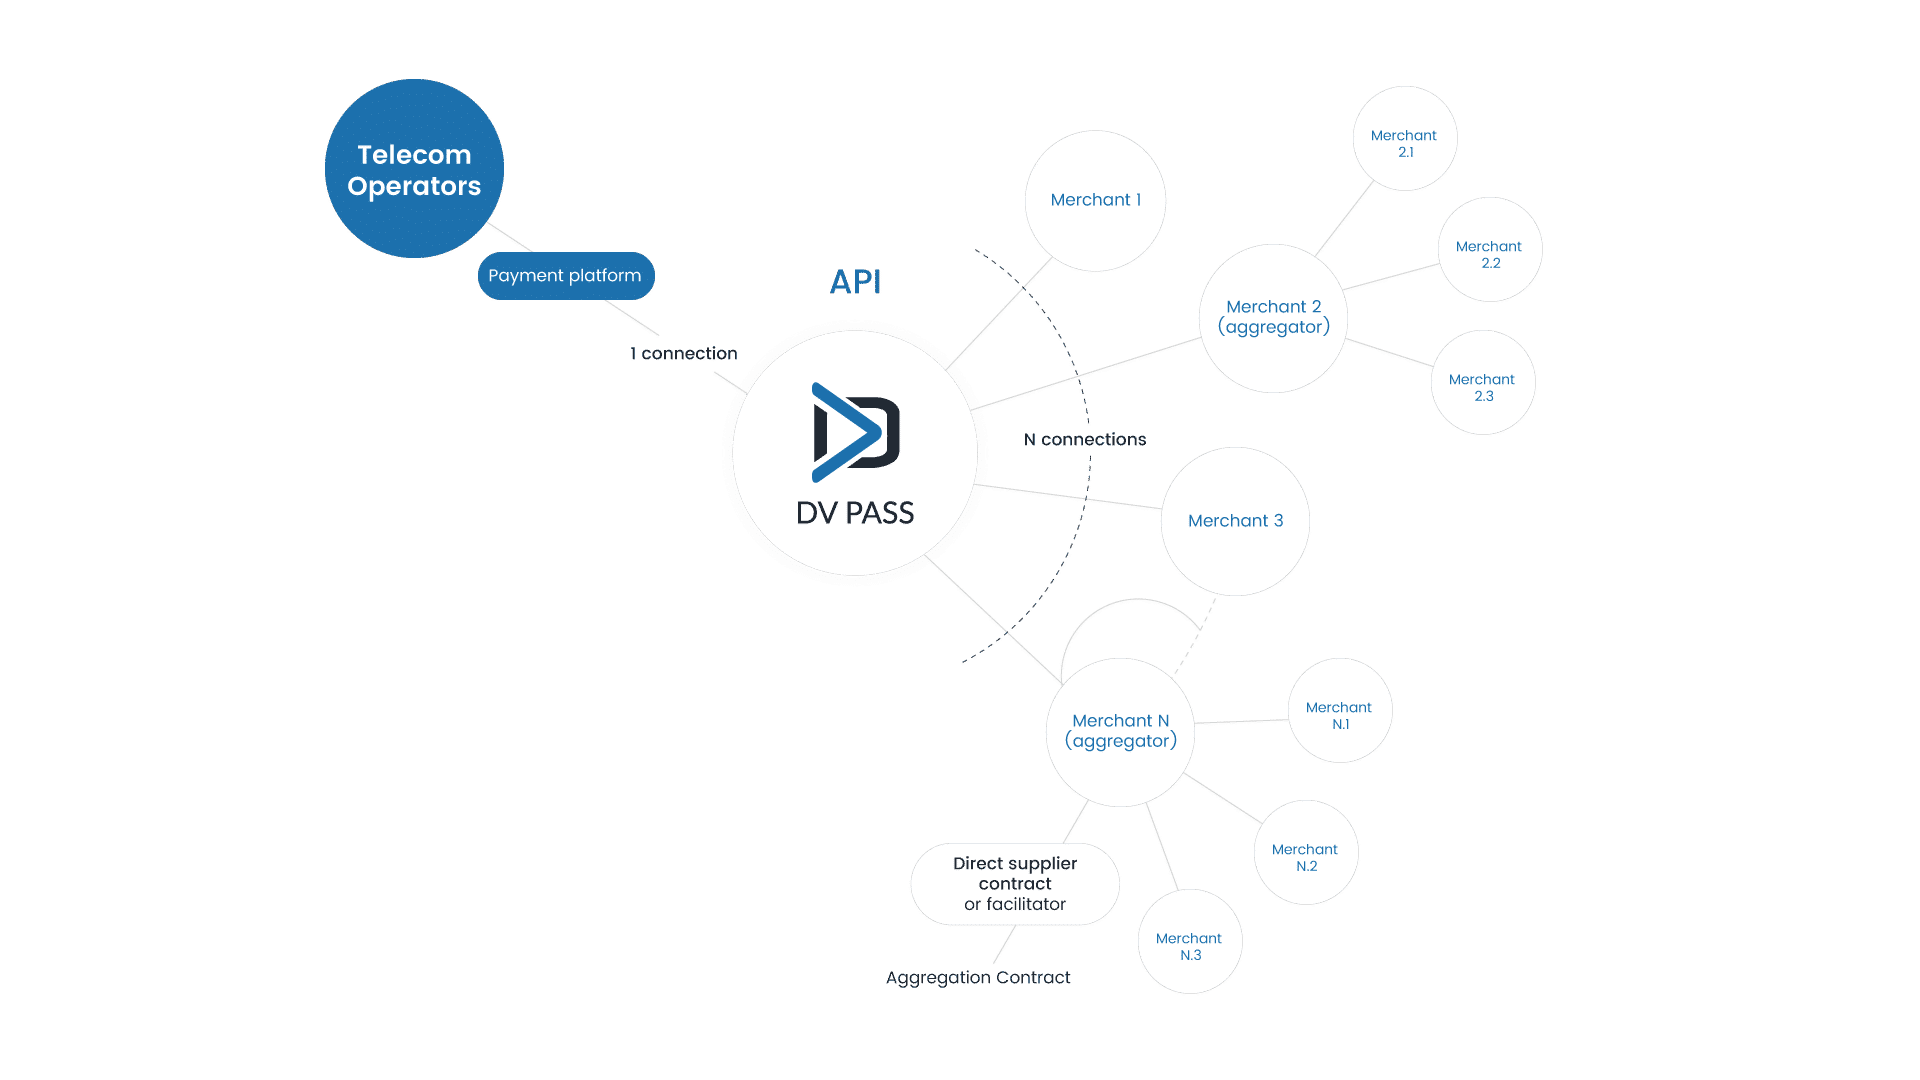 Gráfico que muestra el API de DV Pass y la interconexión con los operadores de telecomunicaciones y merchants.